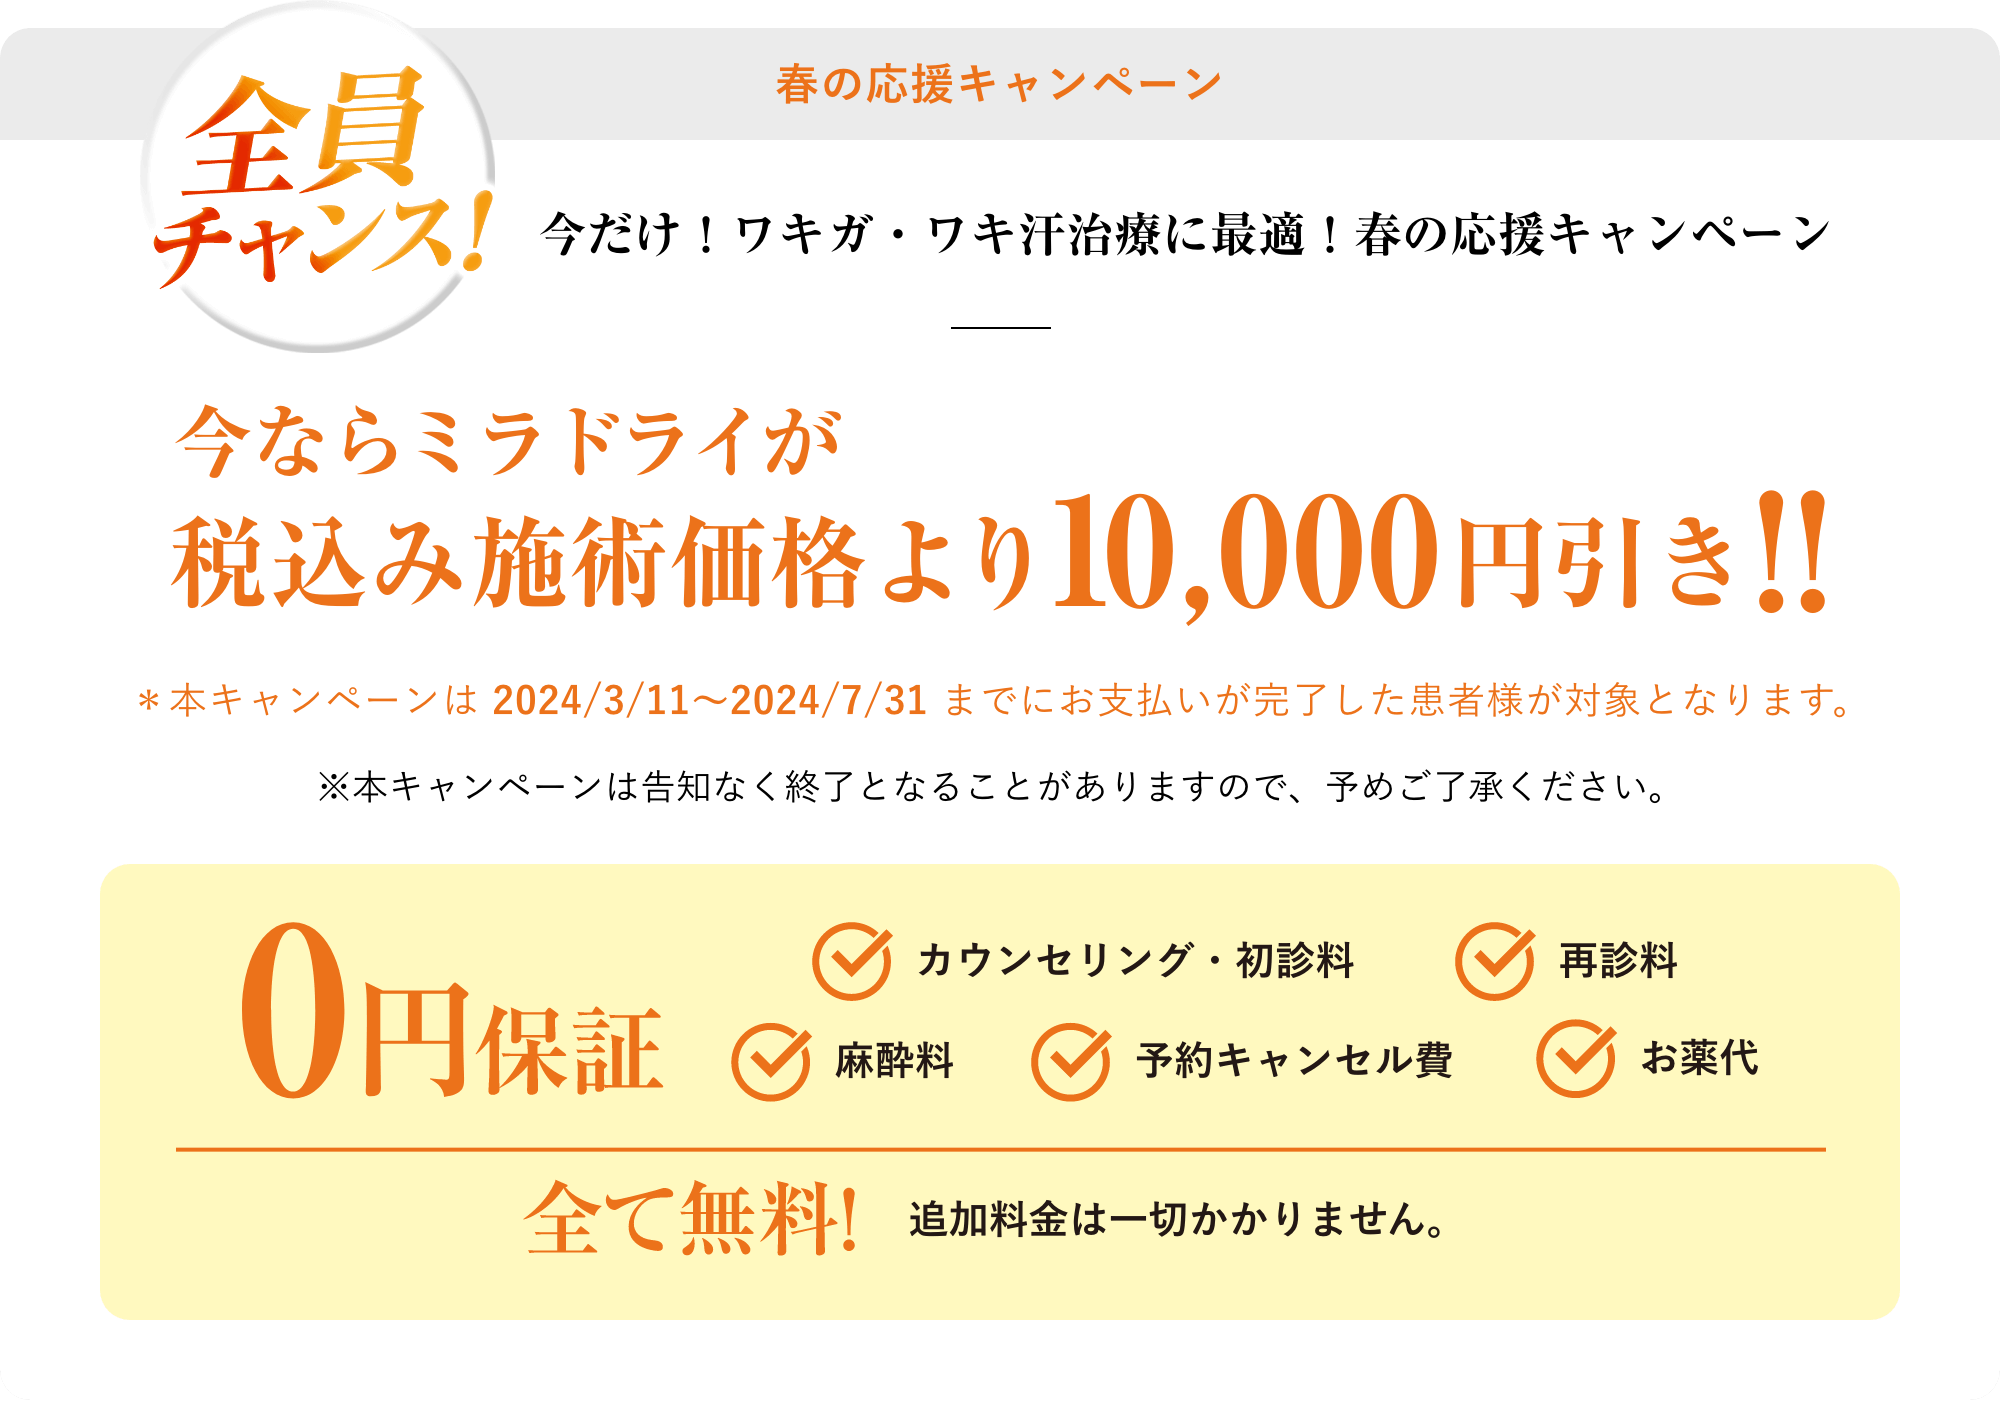 新春の応援キャンペーン税込み施術価格より10,000円引き!